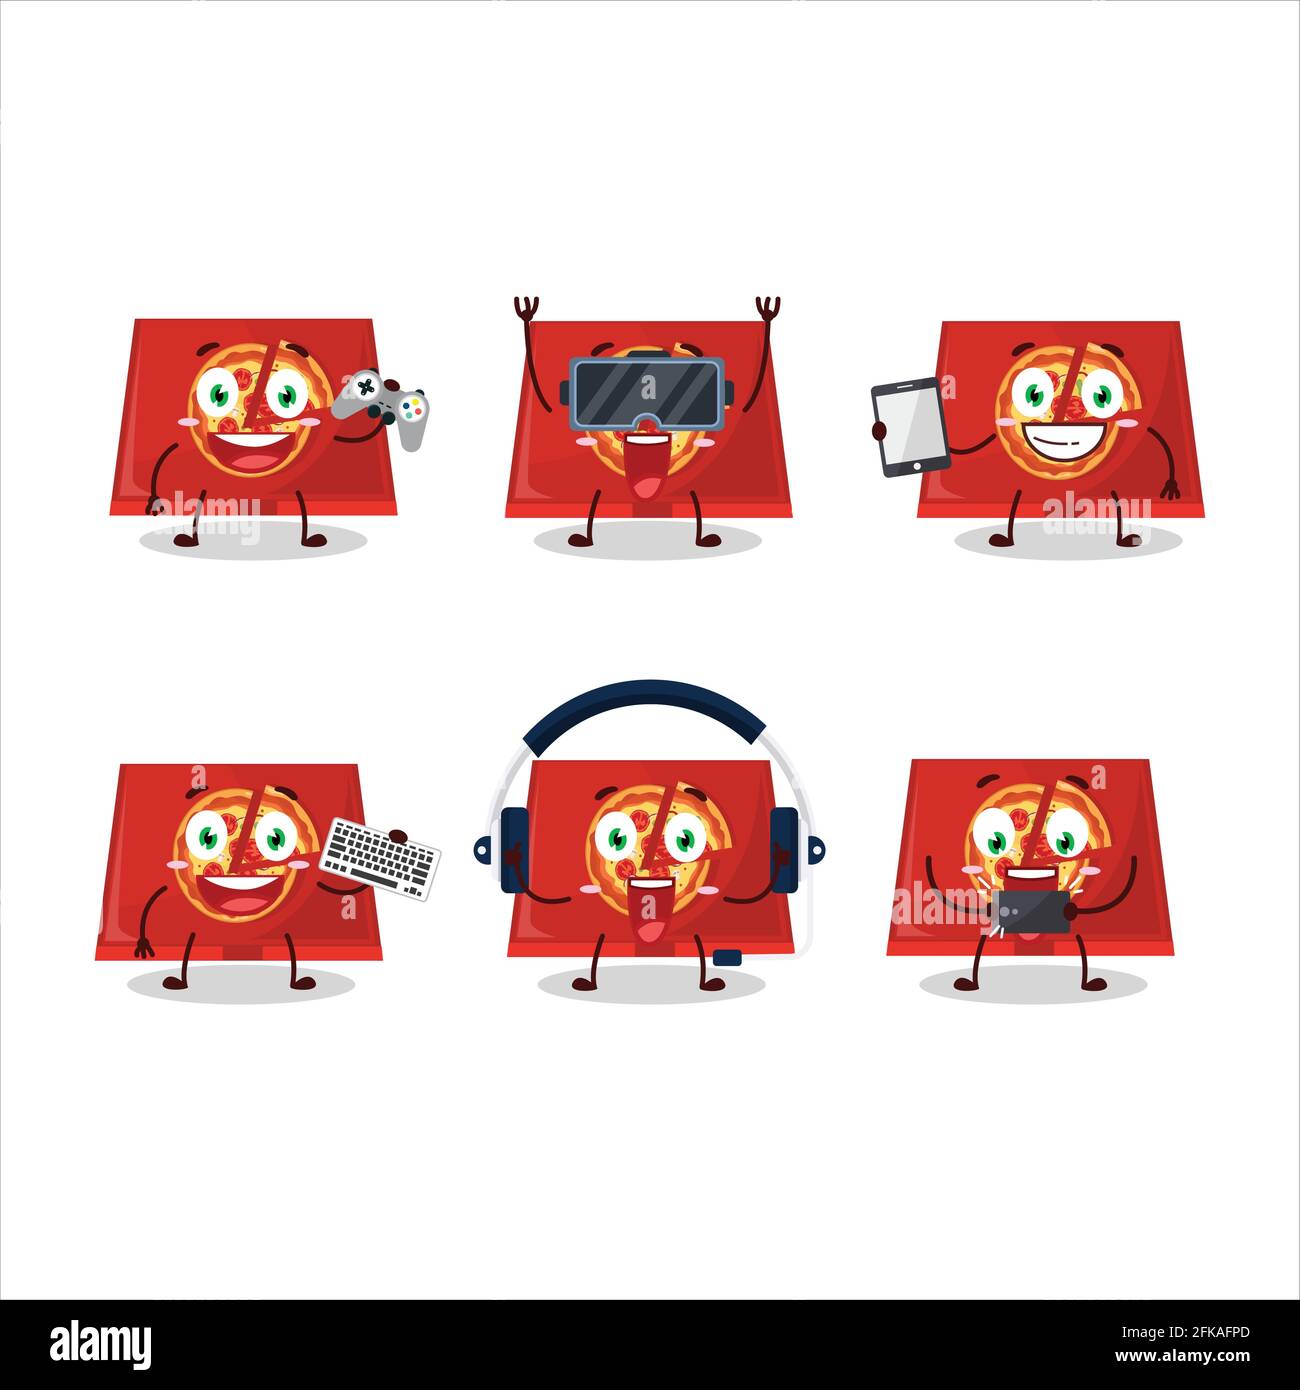 Le personnage de dessin animé de la boîte à pizza joue à des jeux avec diverses émoticônes mignons. Illustration vectorielle Illustration de Vecteur